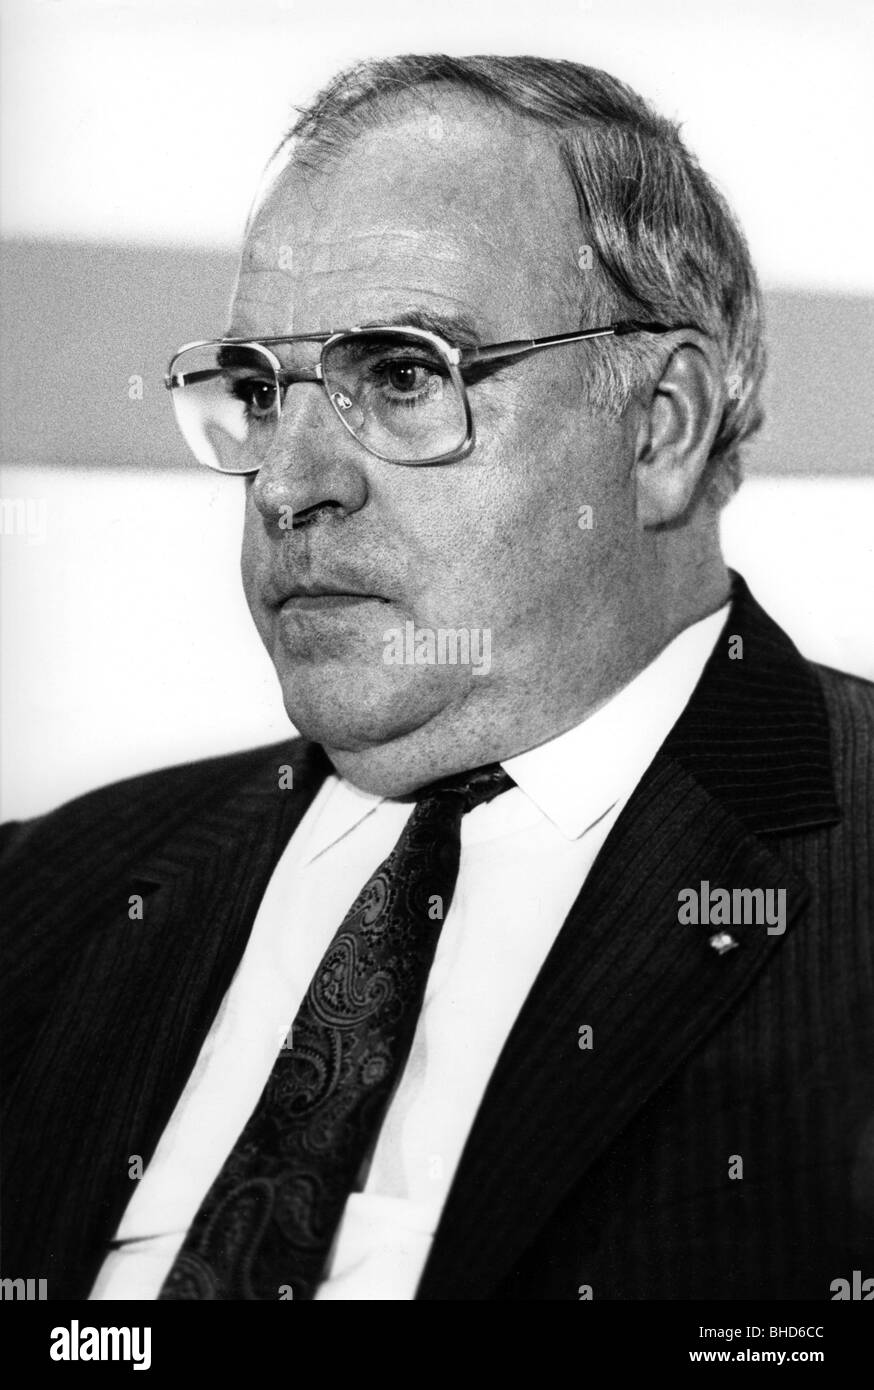 Kohl, Helmut, * 3.4.1930, deutscher Politiker (CDU), Bundeskanzler 4.10.1982 - 26.10.1998, Porträt, 1984, Stockfoto